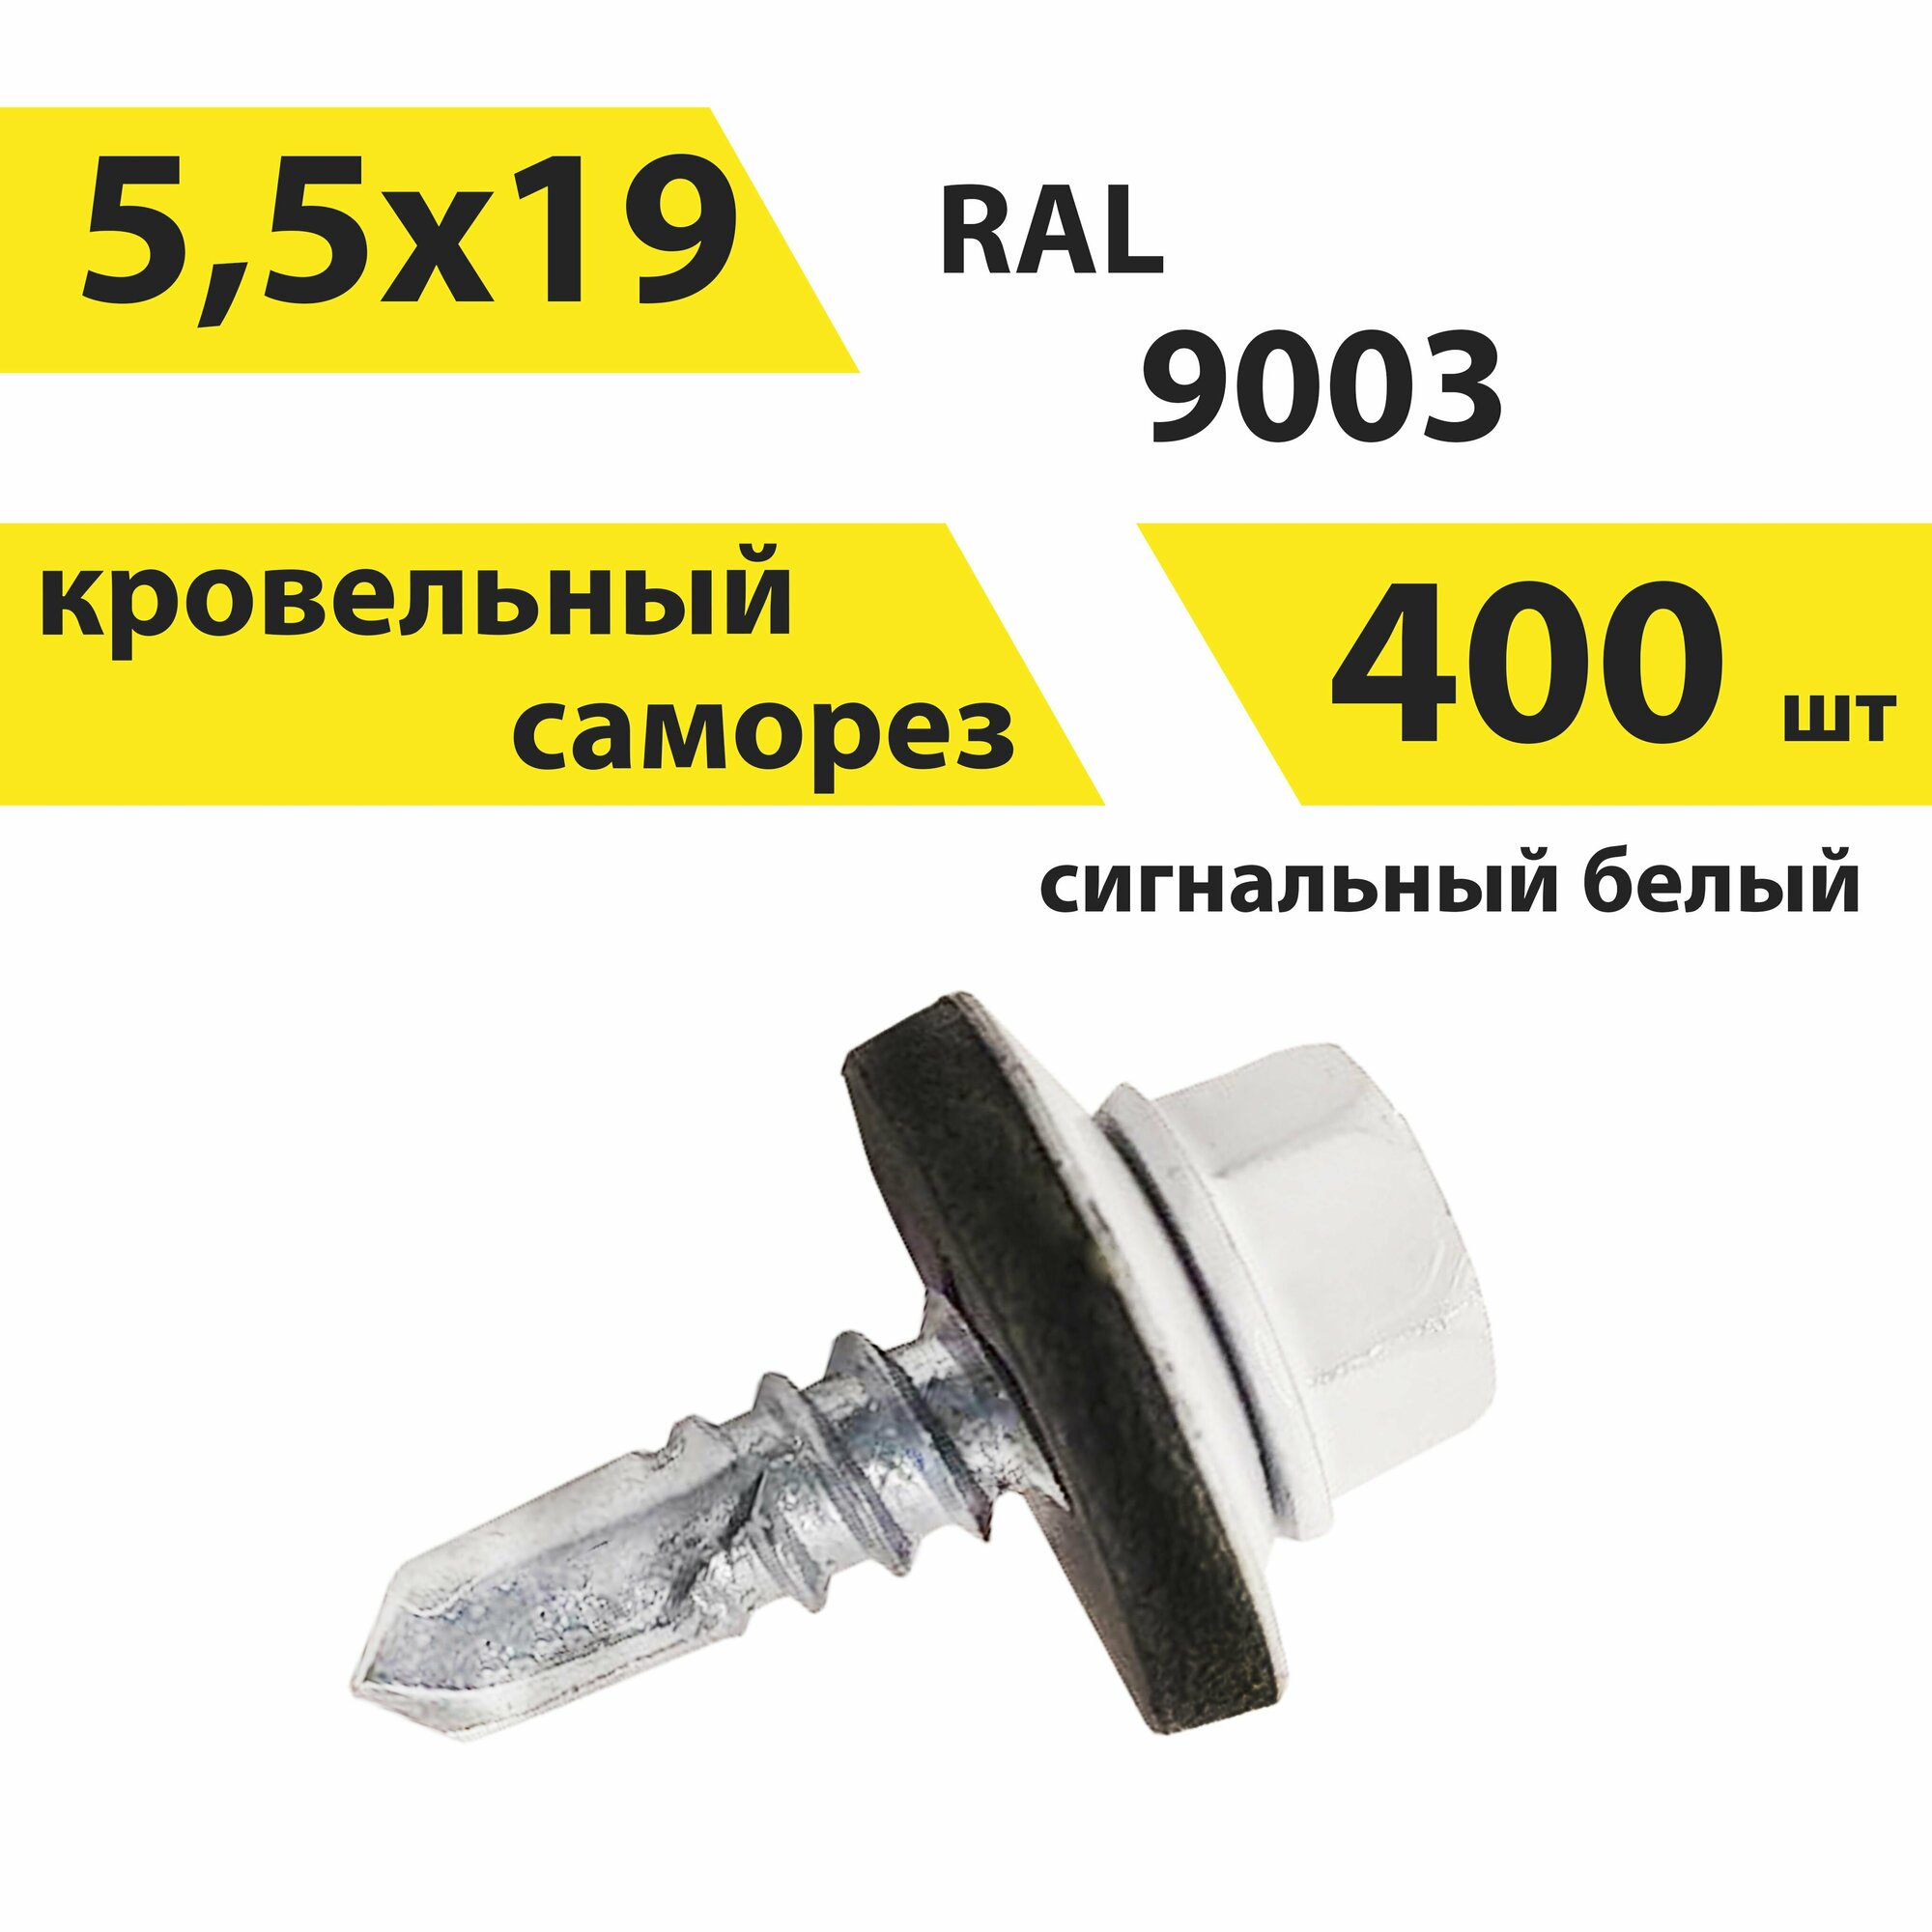 Саморез 55х19 кровельный RAL 9003 (сигнальный белый) 400 штук КрепСтройГрупп 146682